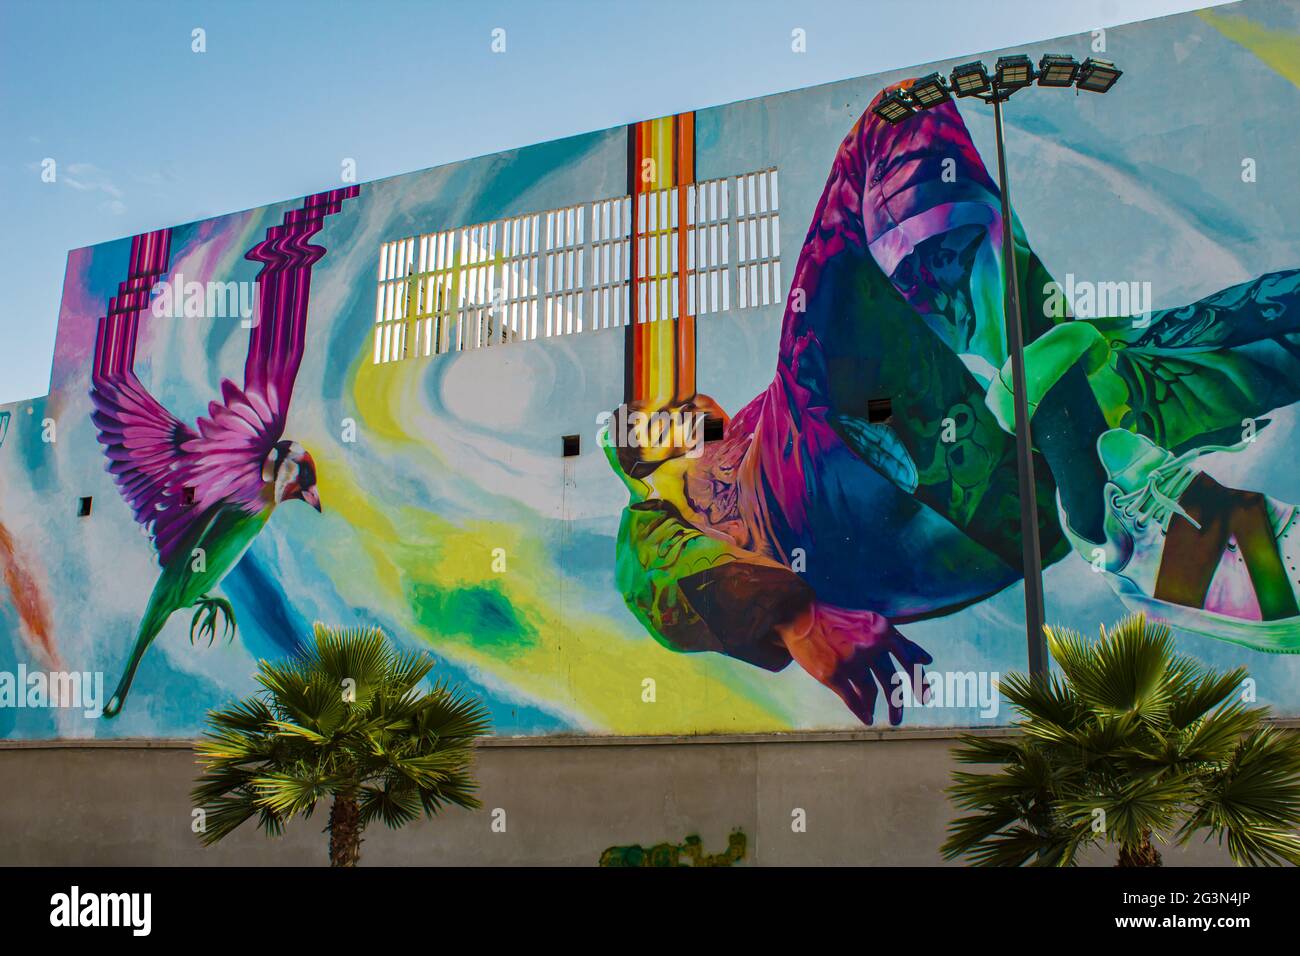 Ampia vista di disegni colorati sulle pareti di un edificio in un luogo pubblico - concetto Art Nouveau - Pittura alle pareti - graffiti. Foto Stock